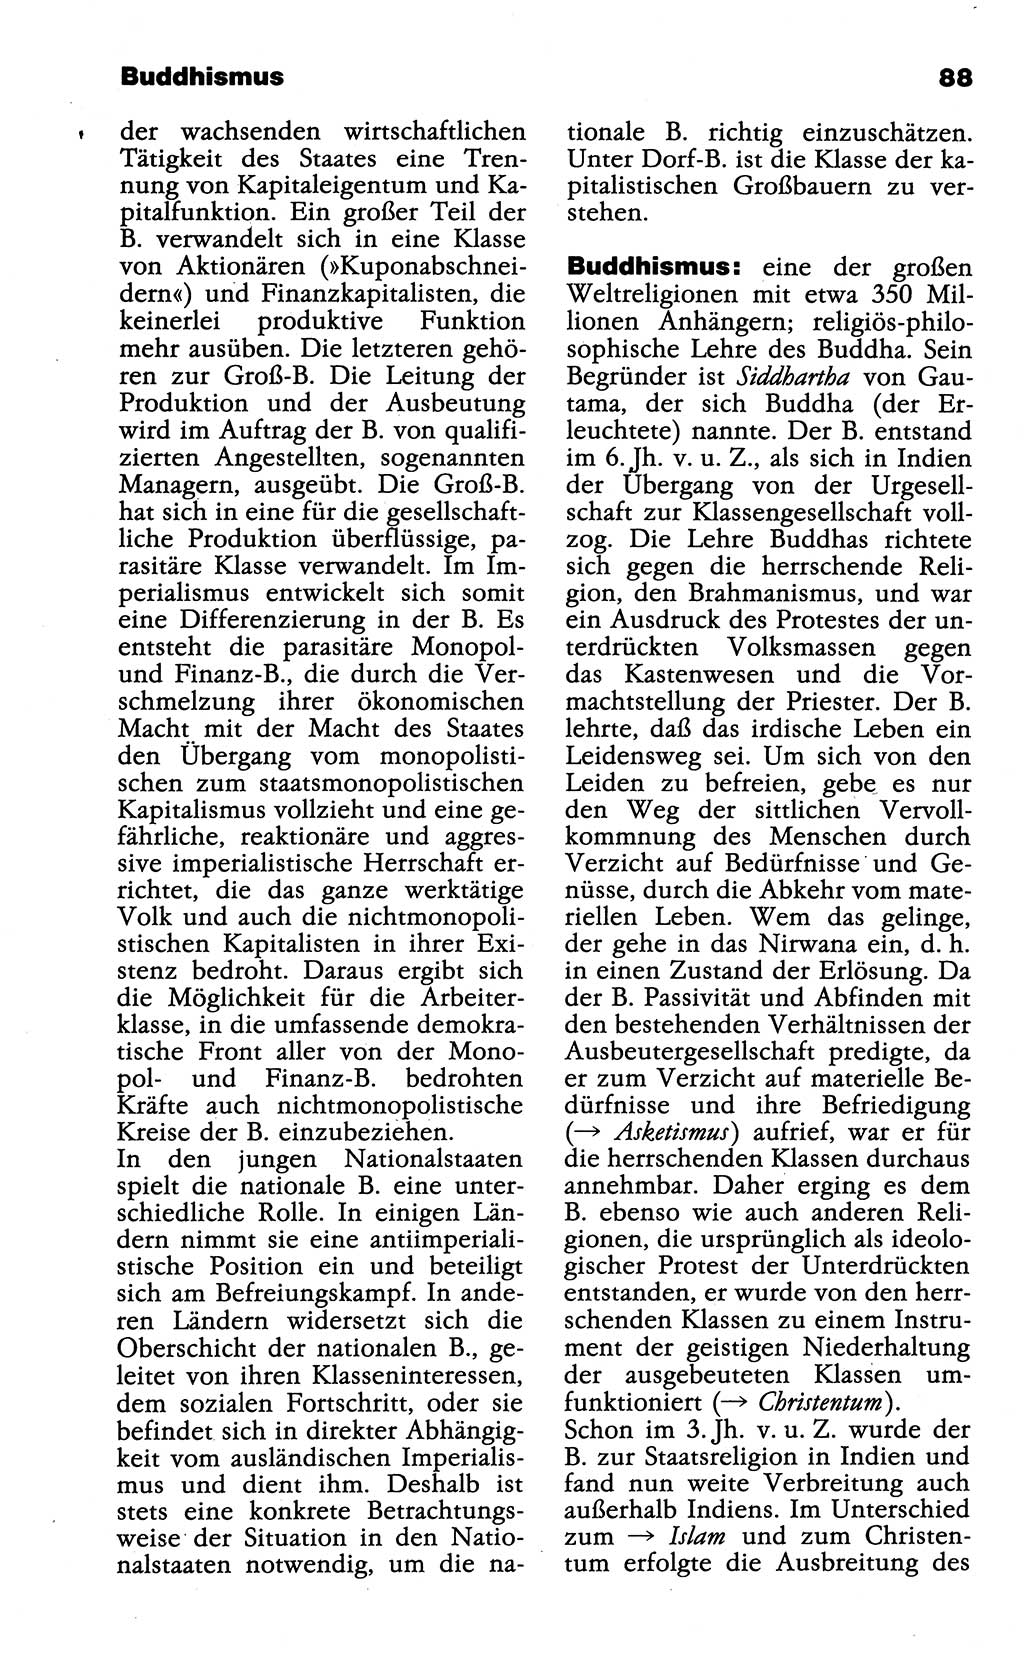 Wörterbuch der marxistisch-leninistischen Philosophie [Deutsche Demokratische Republik (DDR)] 1985, Seite 88 (Wb. ML Phil. DDR 1985, S. 88)